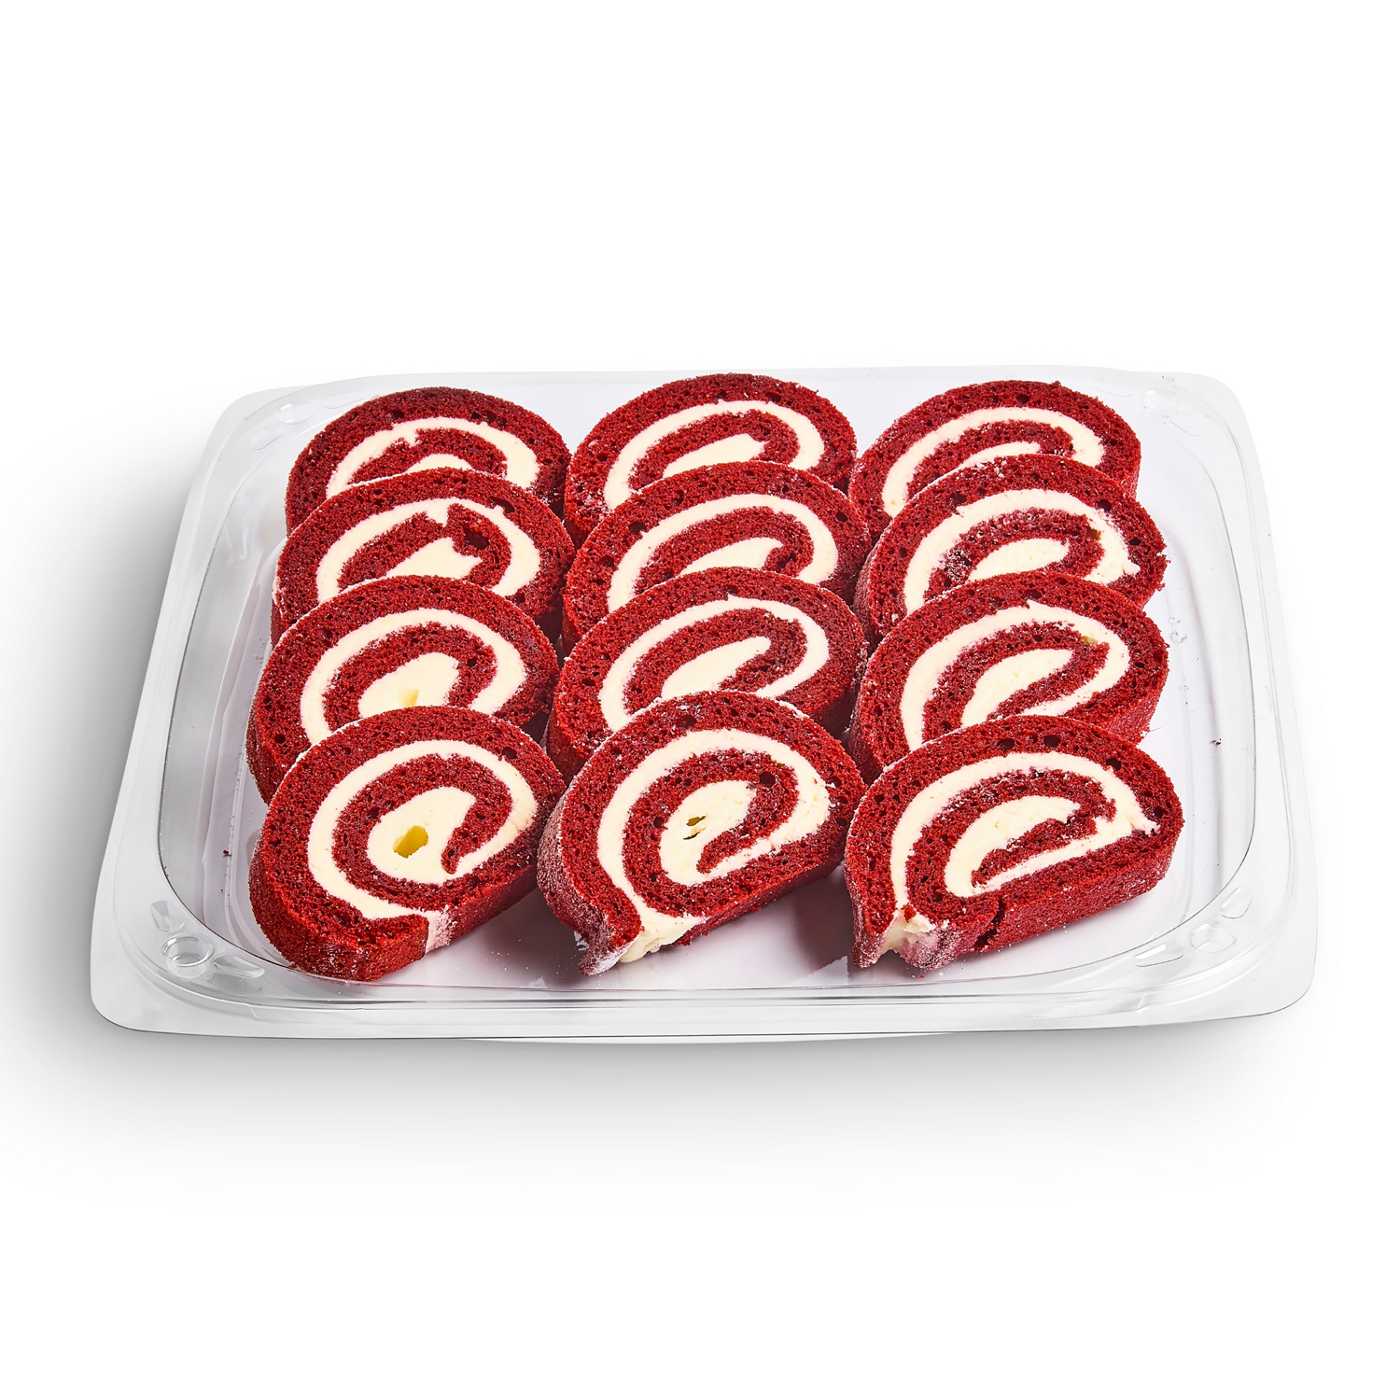 H-E-B Bakery Party Tray - Red Velvet Cake Rolls; image 1 of 3